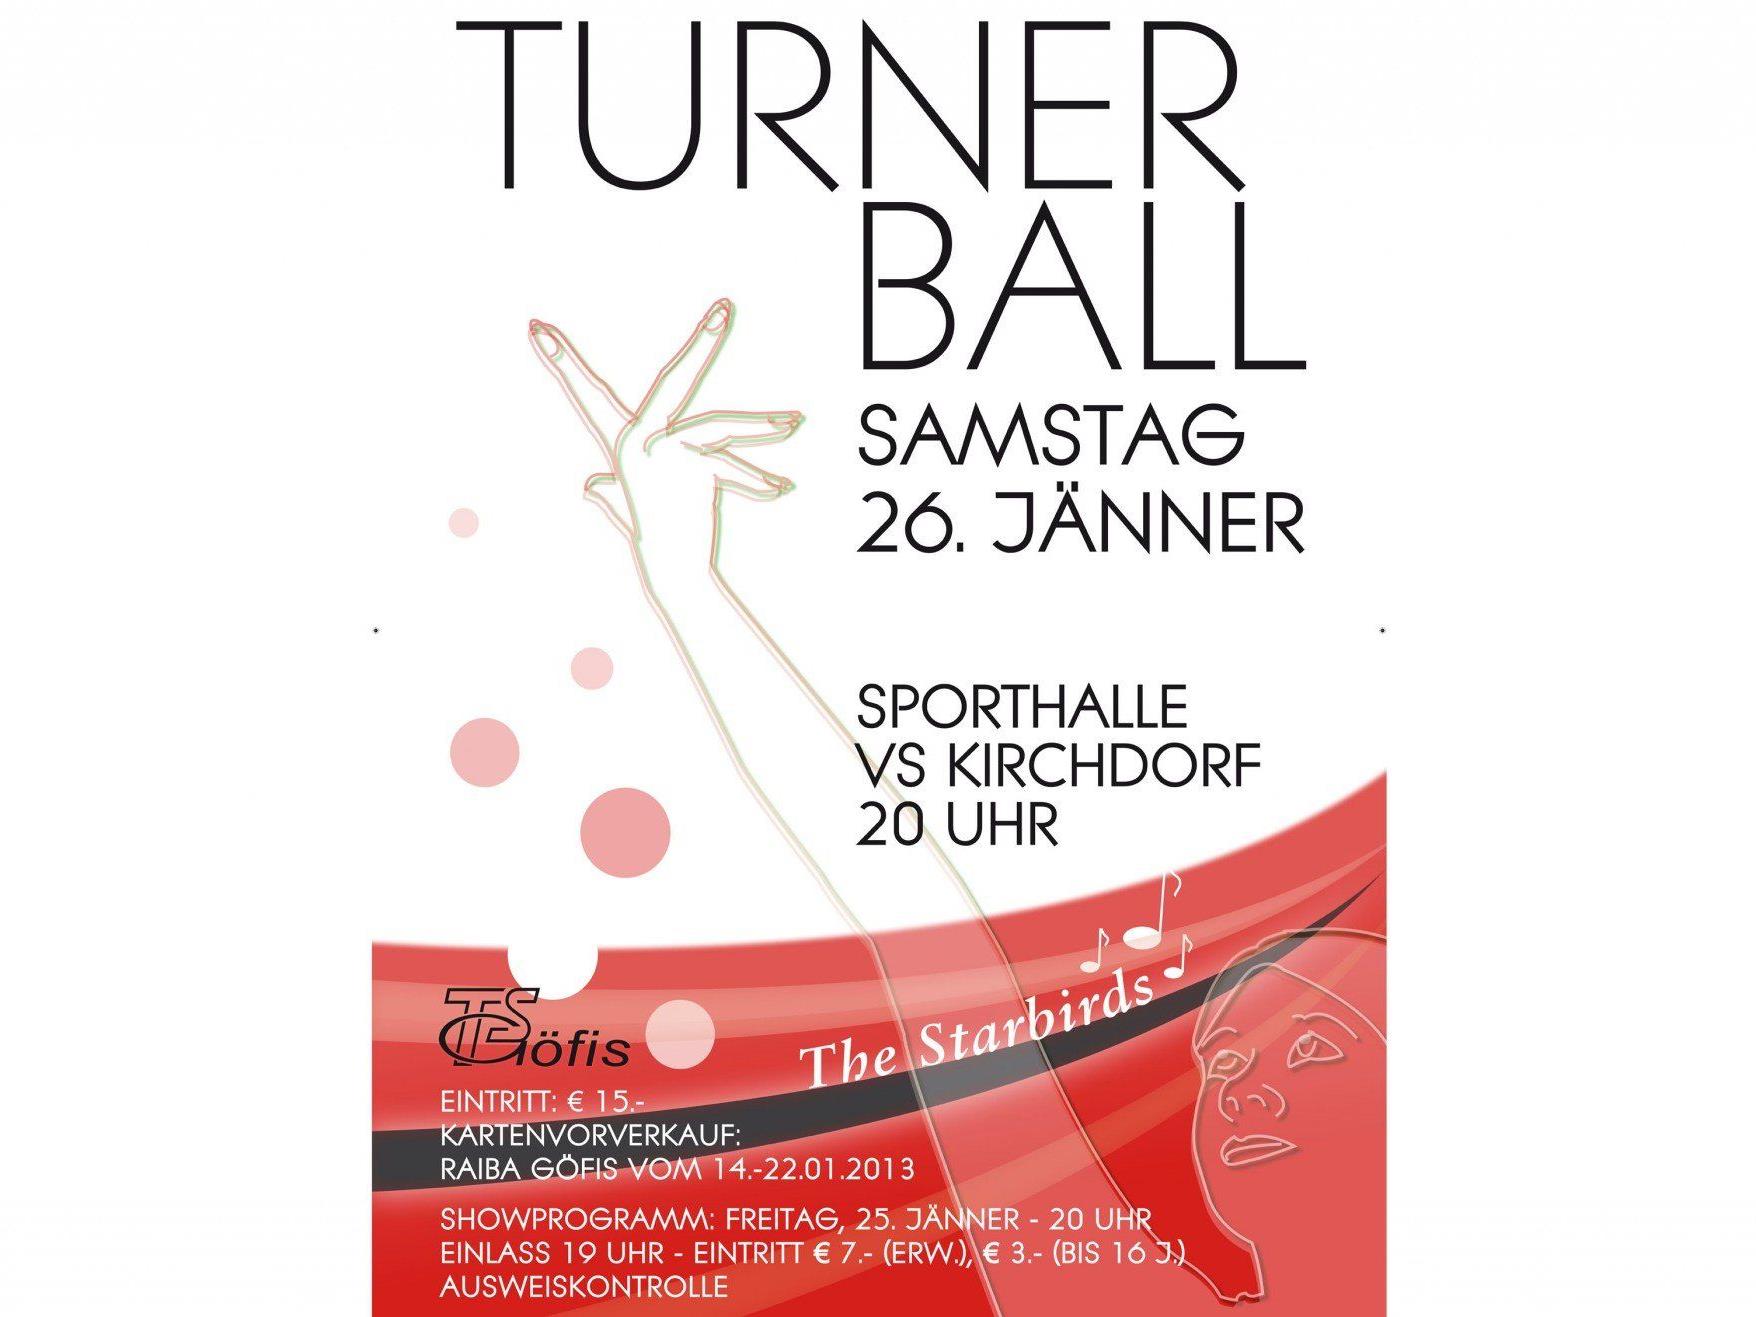 Turnerball-Wochenende - 25. und 26. Jänner 2013